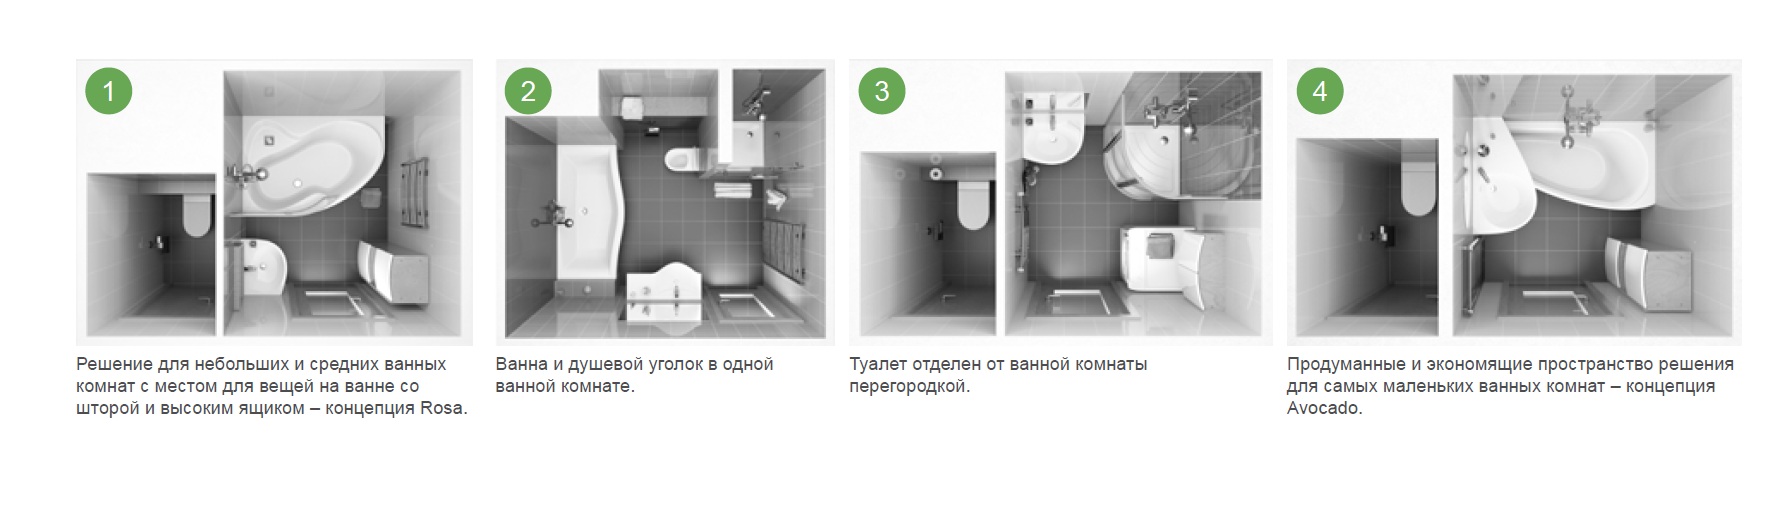 Четыре варианта ремонта ванной комнаты в панельных домах